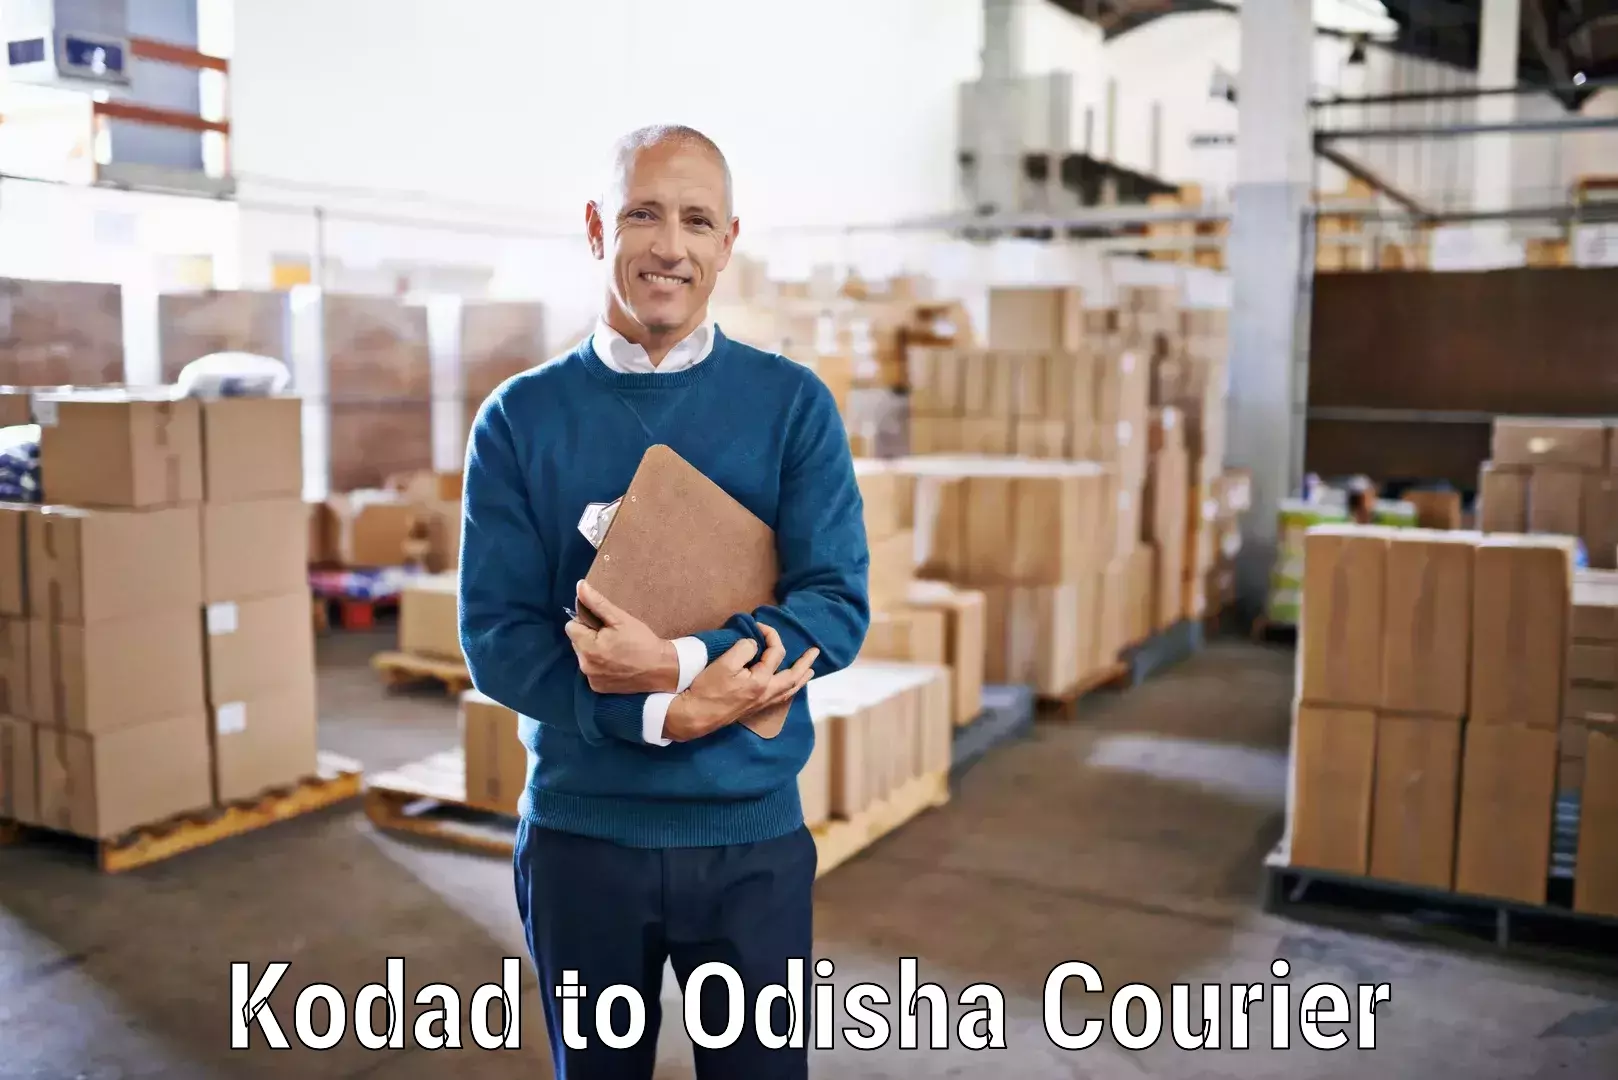 Seamless shipping experience Kodad to Riamal